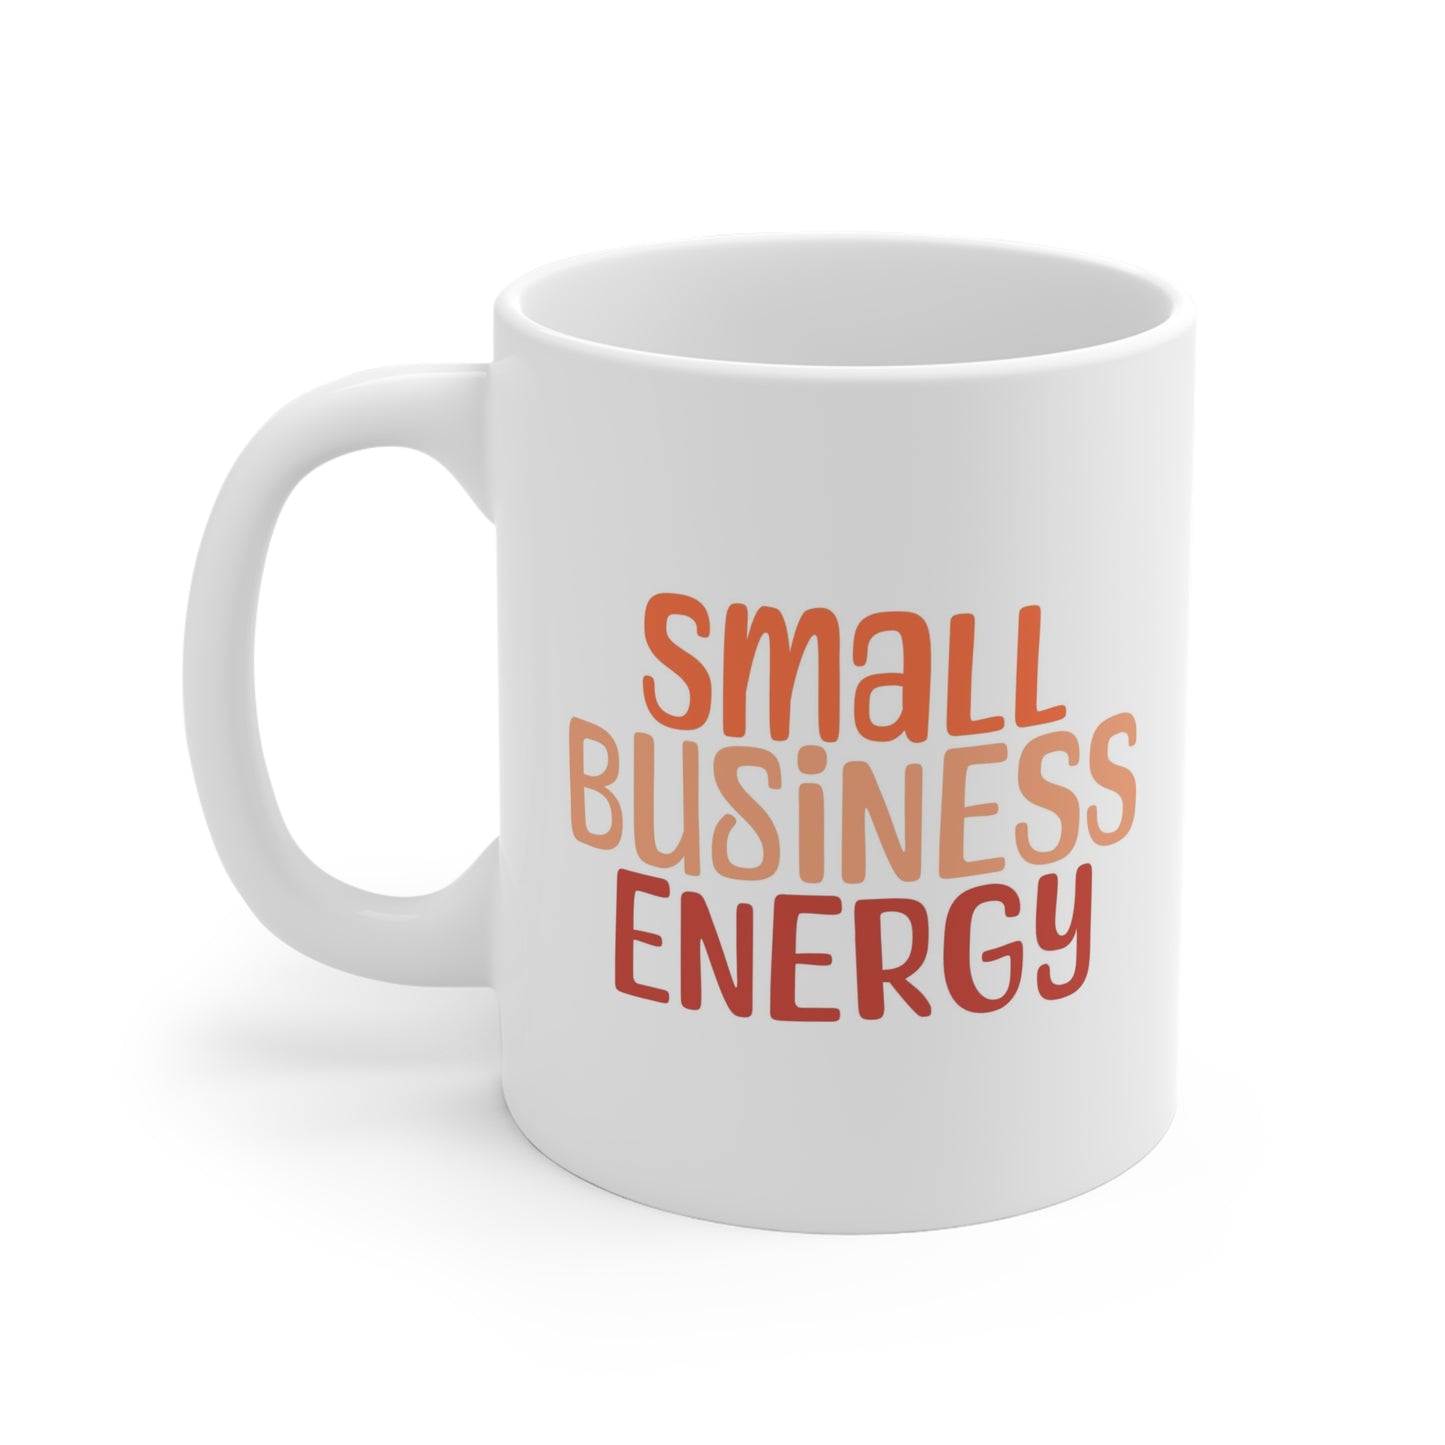 Small Business Energy Mug